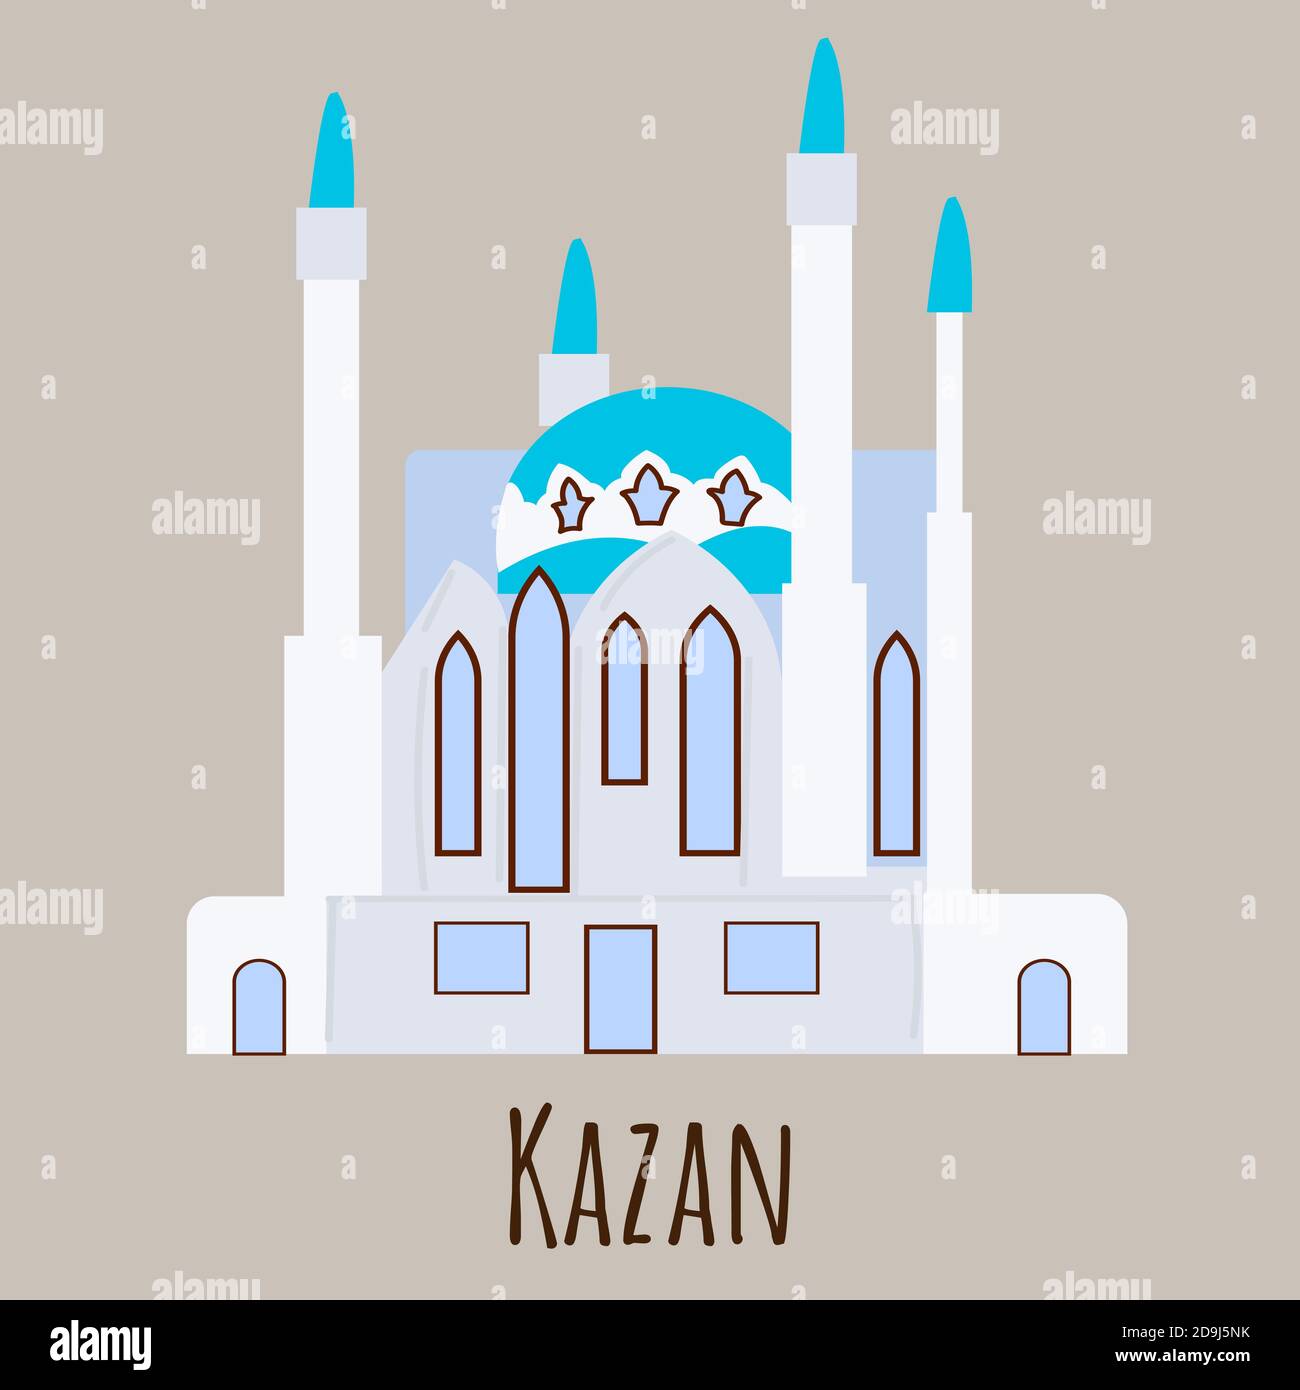 Moschea in stile piatto, simbolo di Kazan. Icona del punto di riferimento per i viaggiatori. Illustrazione vettoriale isolata su sfondo grigio. Illustrazione Vettoriale